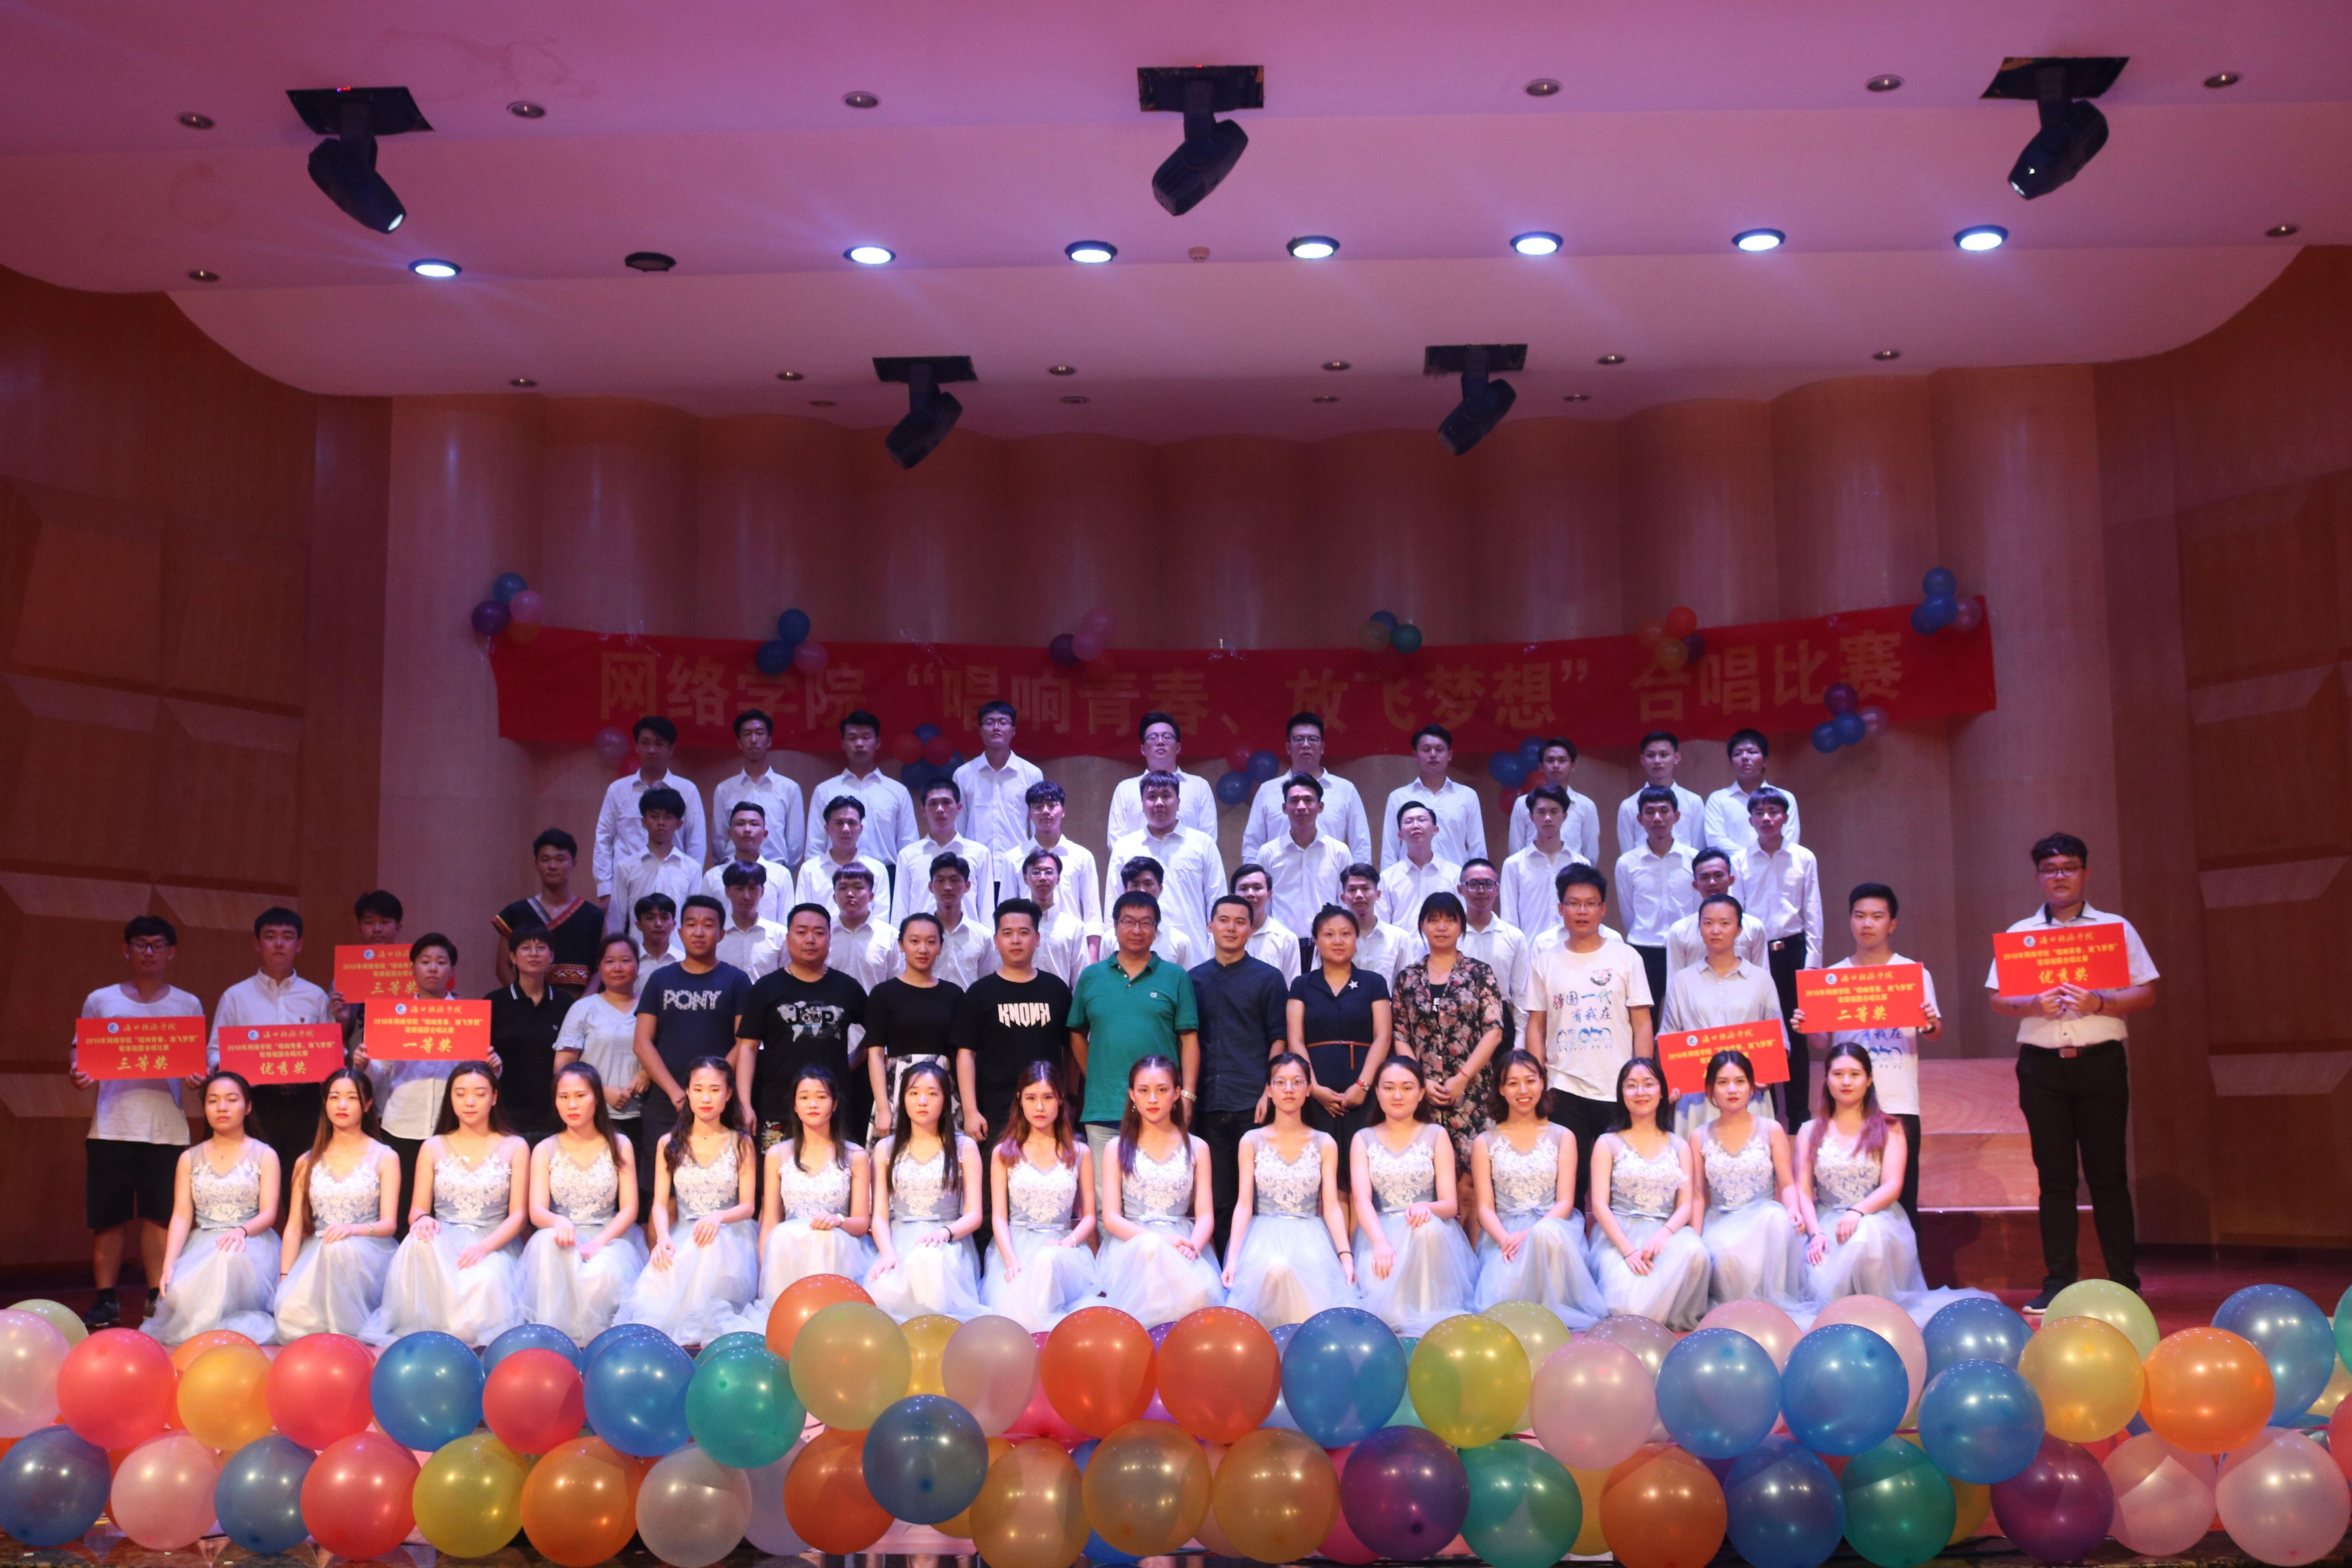 网络学院举办“唱响青春·放飞梦想”歌颂祖国合唱比赛